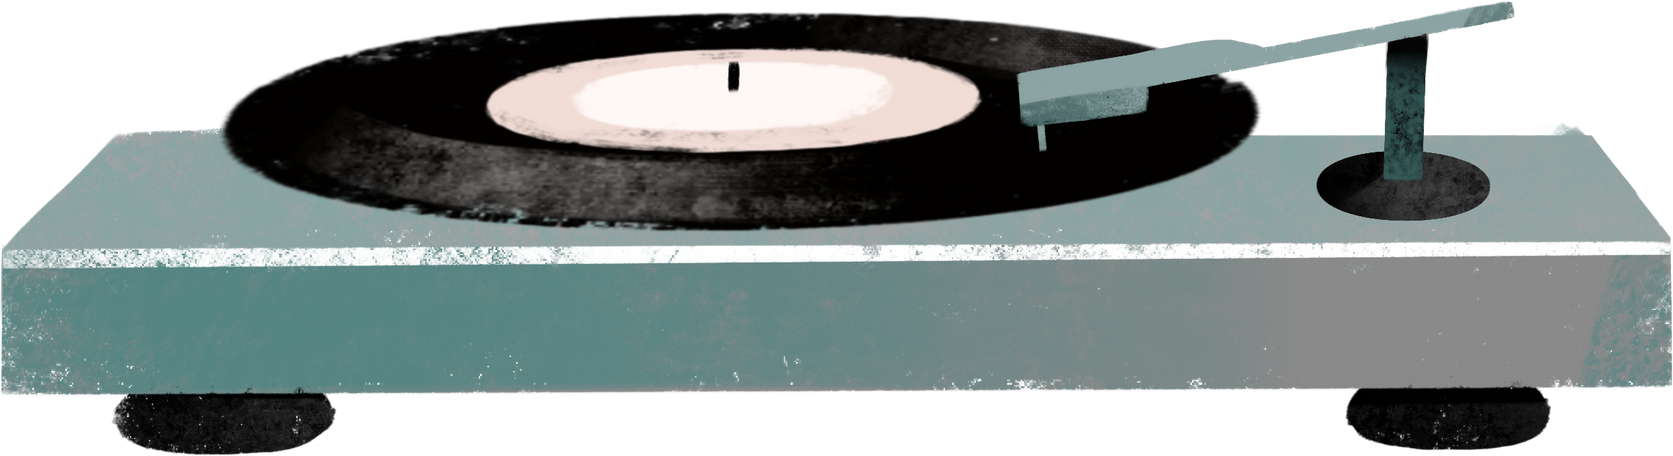 vinyl player Illustration in PNG, SVG